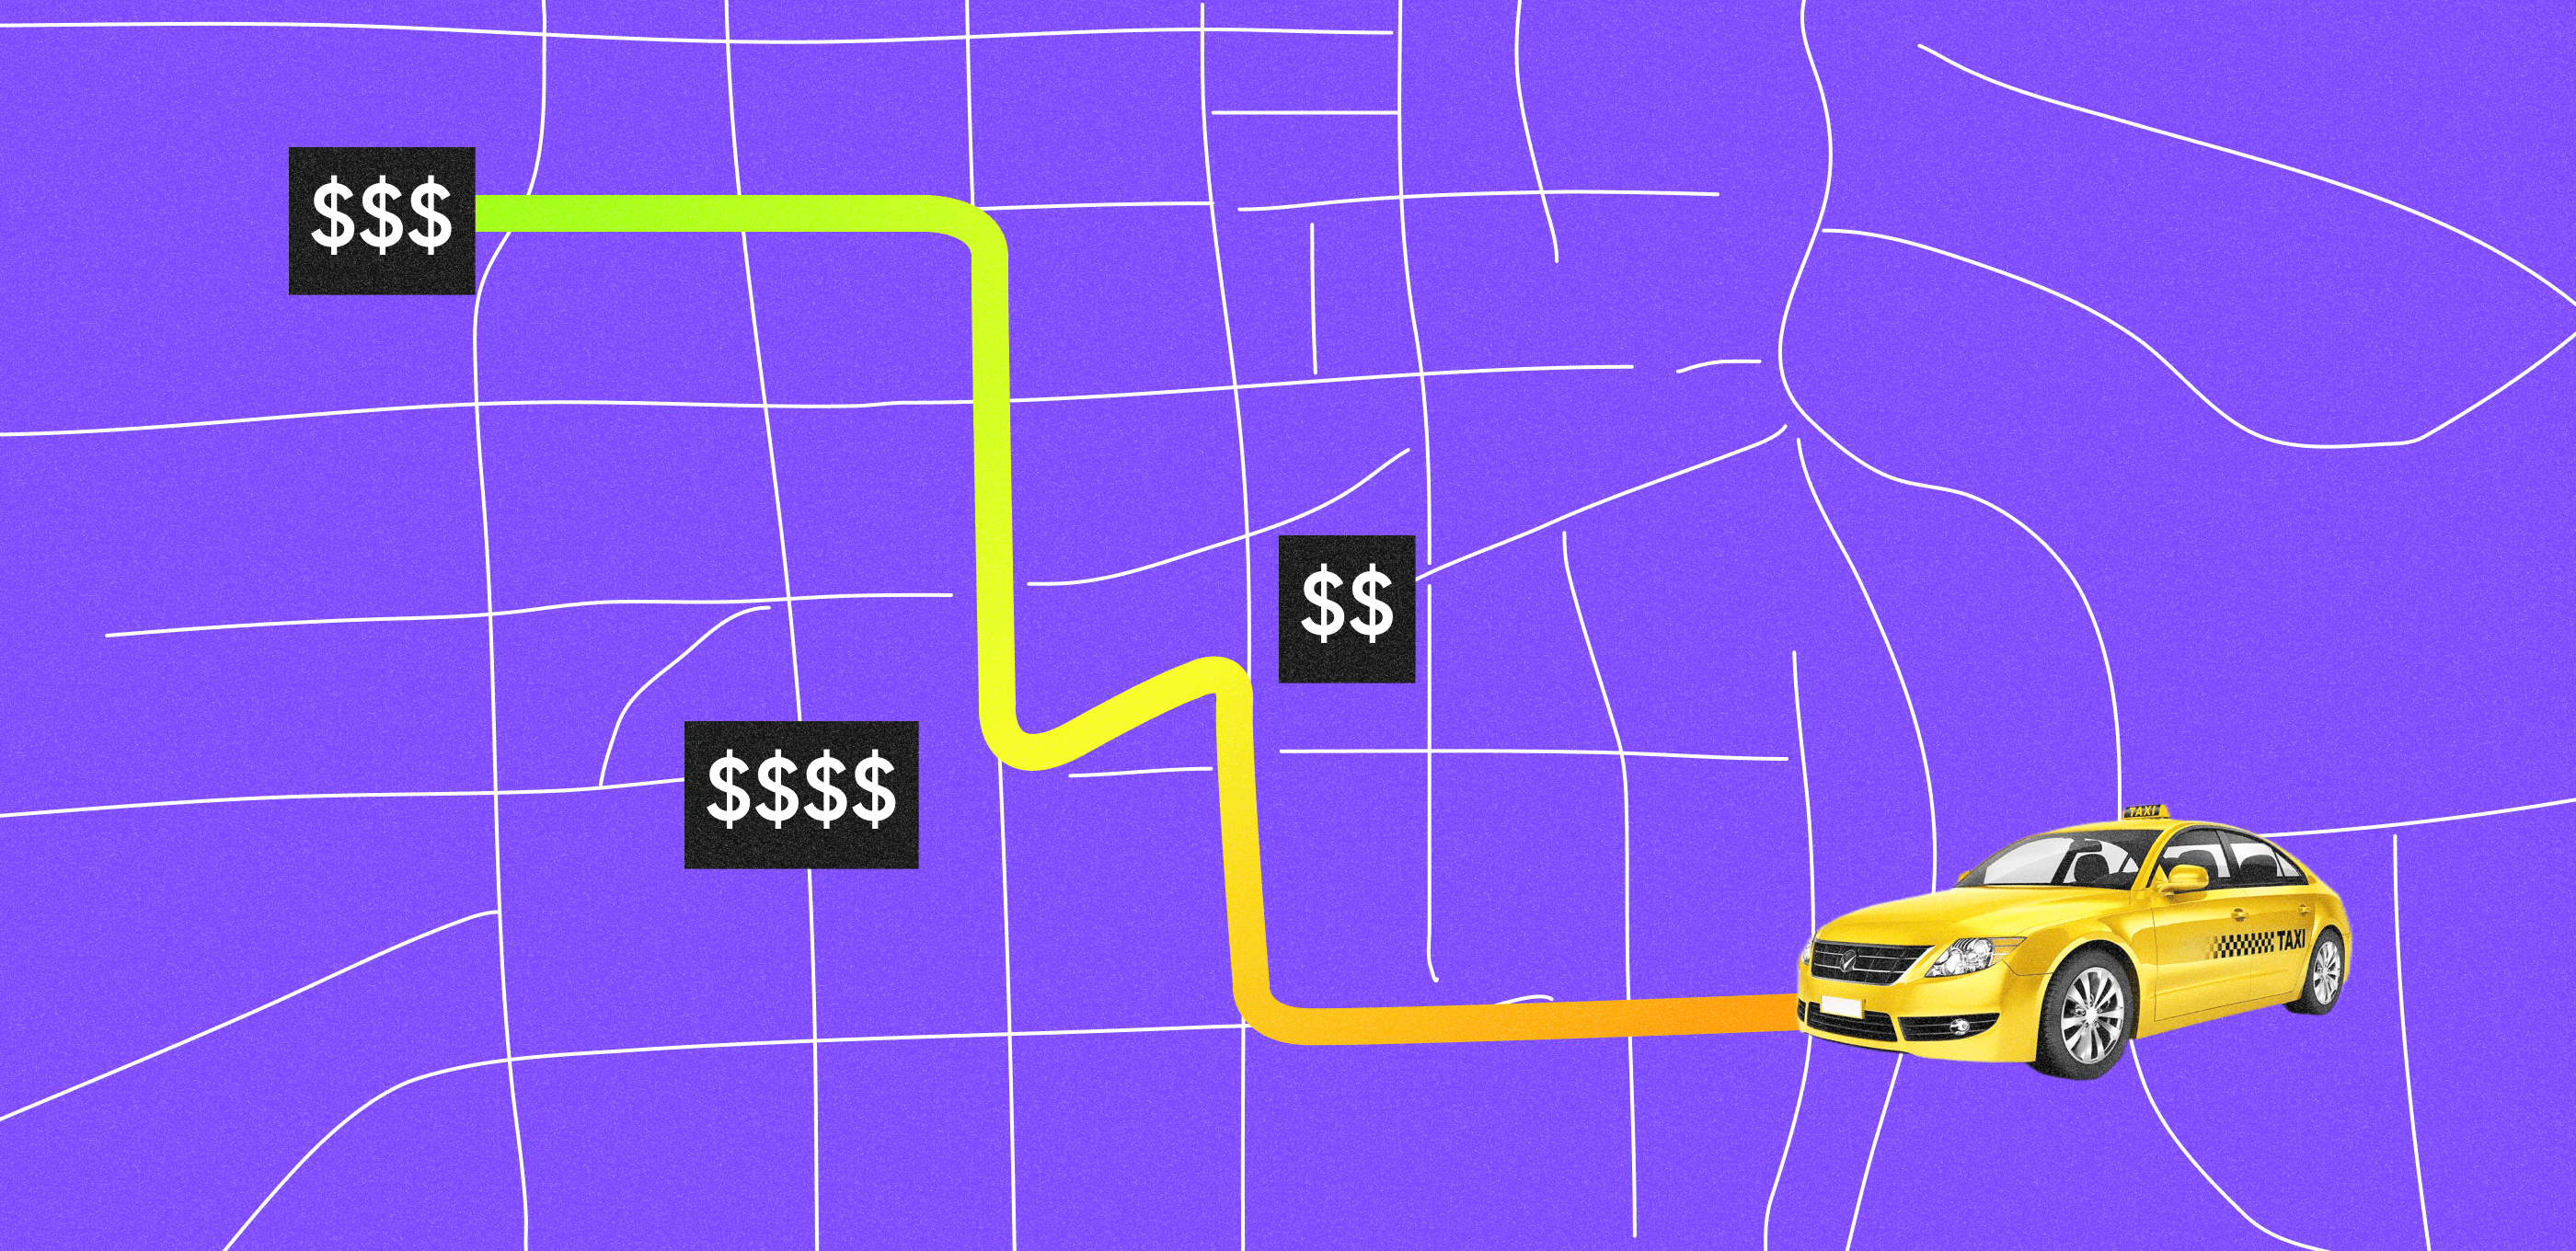 How We Tested a Taxi Aggregator Idea